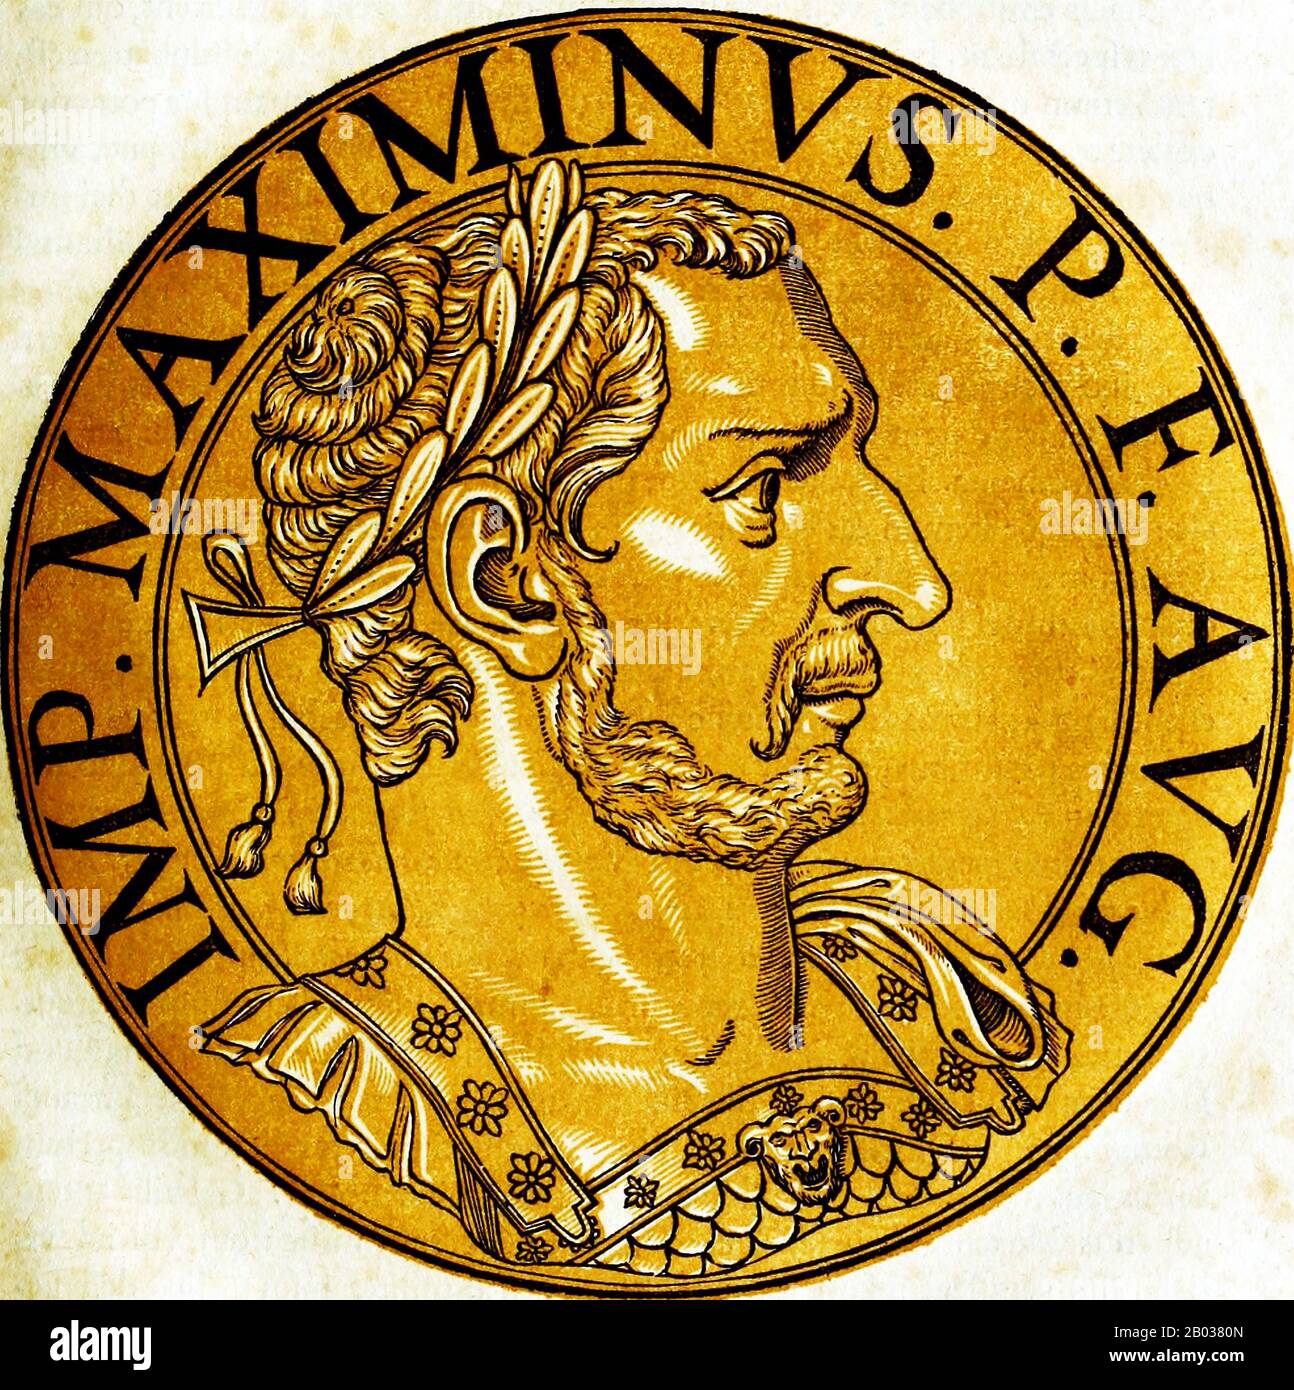 Maximinus II (270-313), également connu sous le nom de Maximinus Daia ou Maximinus Daza, était de la réserve paysanne et neveu de l'empereur Galerius. Il s'est joint à l'armée et s'est élevé à une grande distinction, finalement adopté par son oncle et élevé au rang de César, lui donnant le poste de gouverneur de la Syrie et de l'Egypte. Lorsque son oncle est mort en 311, Maximinus a divisé l'Empire oriental entre lui et le co-empereur Licinius. Cependant, quand Licinius a fait cause commune avec Constantin I, Maximinus a été forcé d'établir une alliance secrète avec l'usurier empereur Maxentius, qui contrôlait l'Italie. Il a fait la guerre ouverte avec Lic Banque D'Images